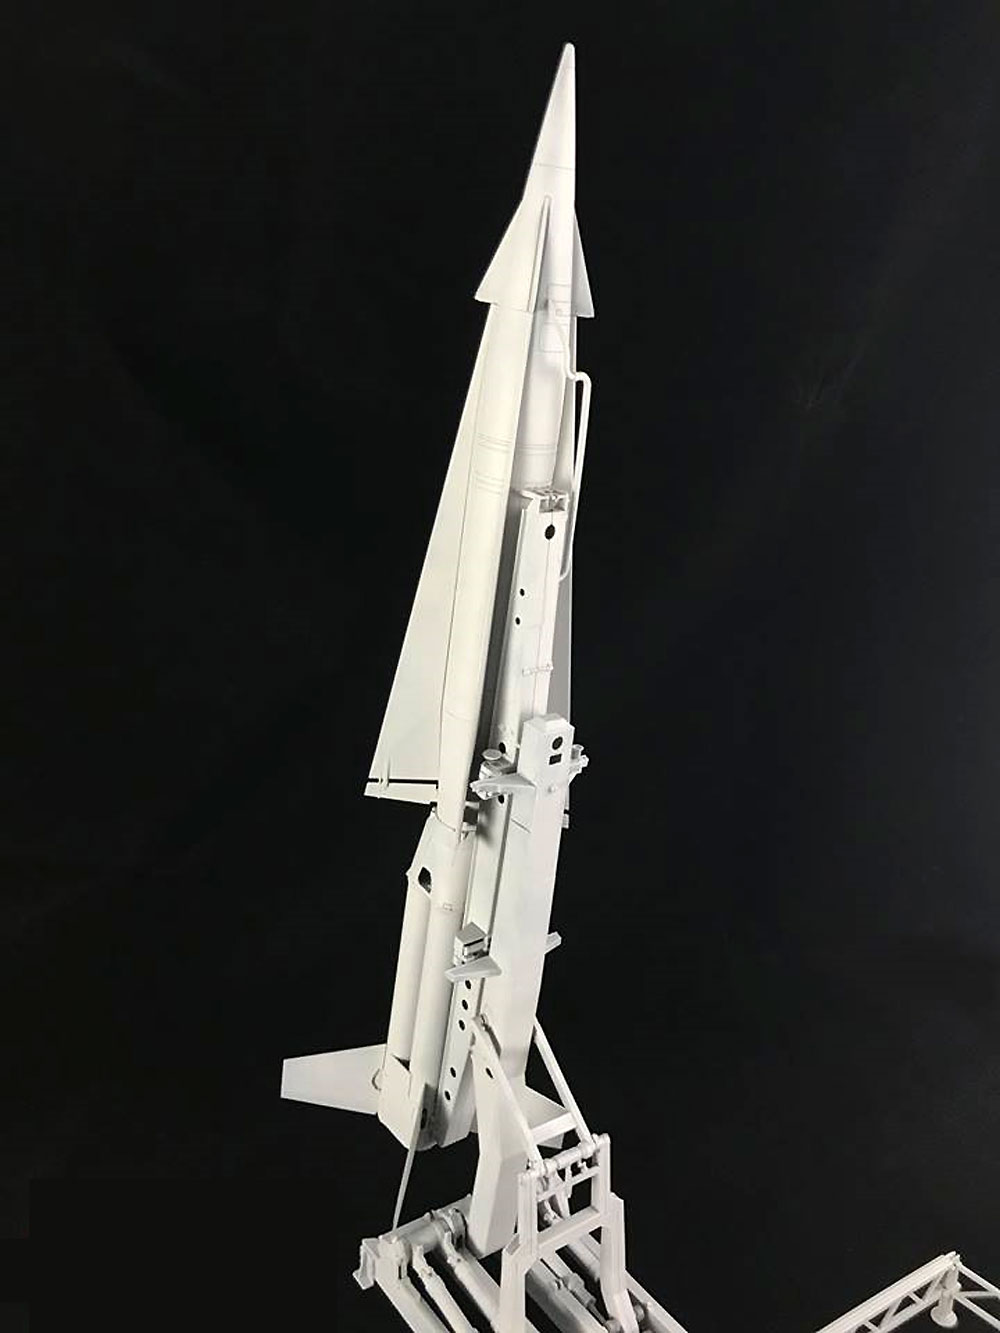 MIM-14 ナイキ ハーキュリーズ 地対空ミサイル インターナショナルVer. プラモデル (フリーダムモデル 1/35 ミリタリーミニチュアワールド No.15106) 商品画像_2